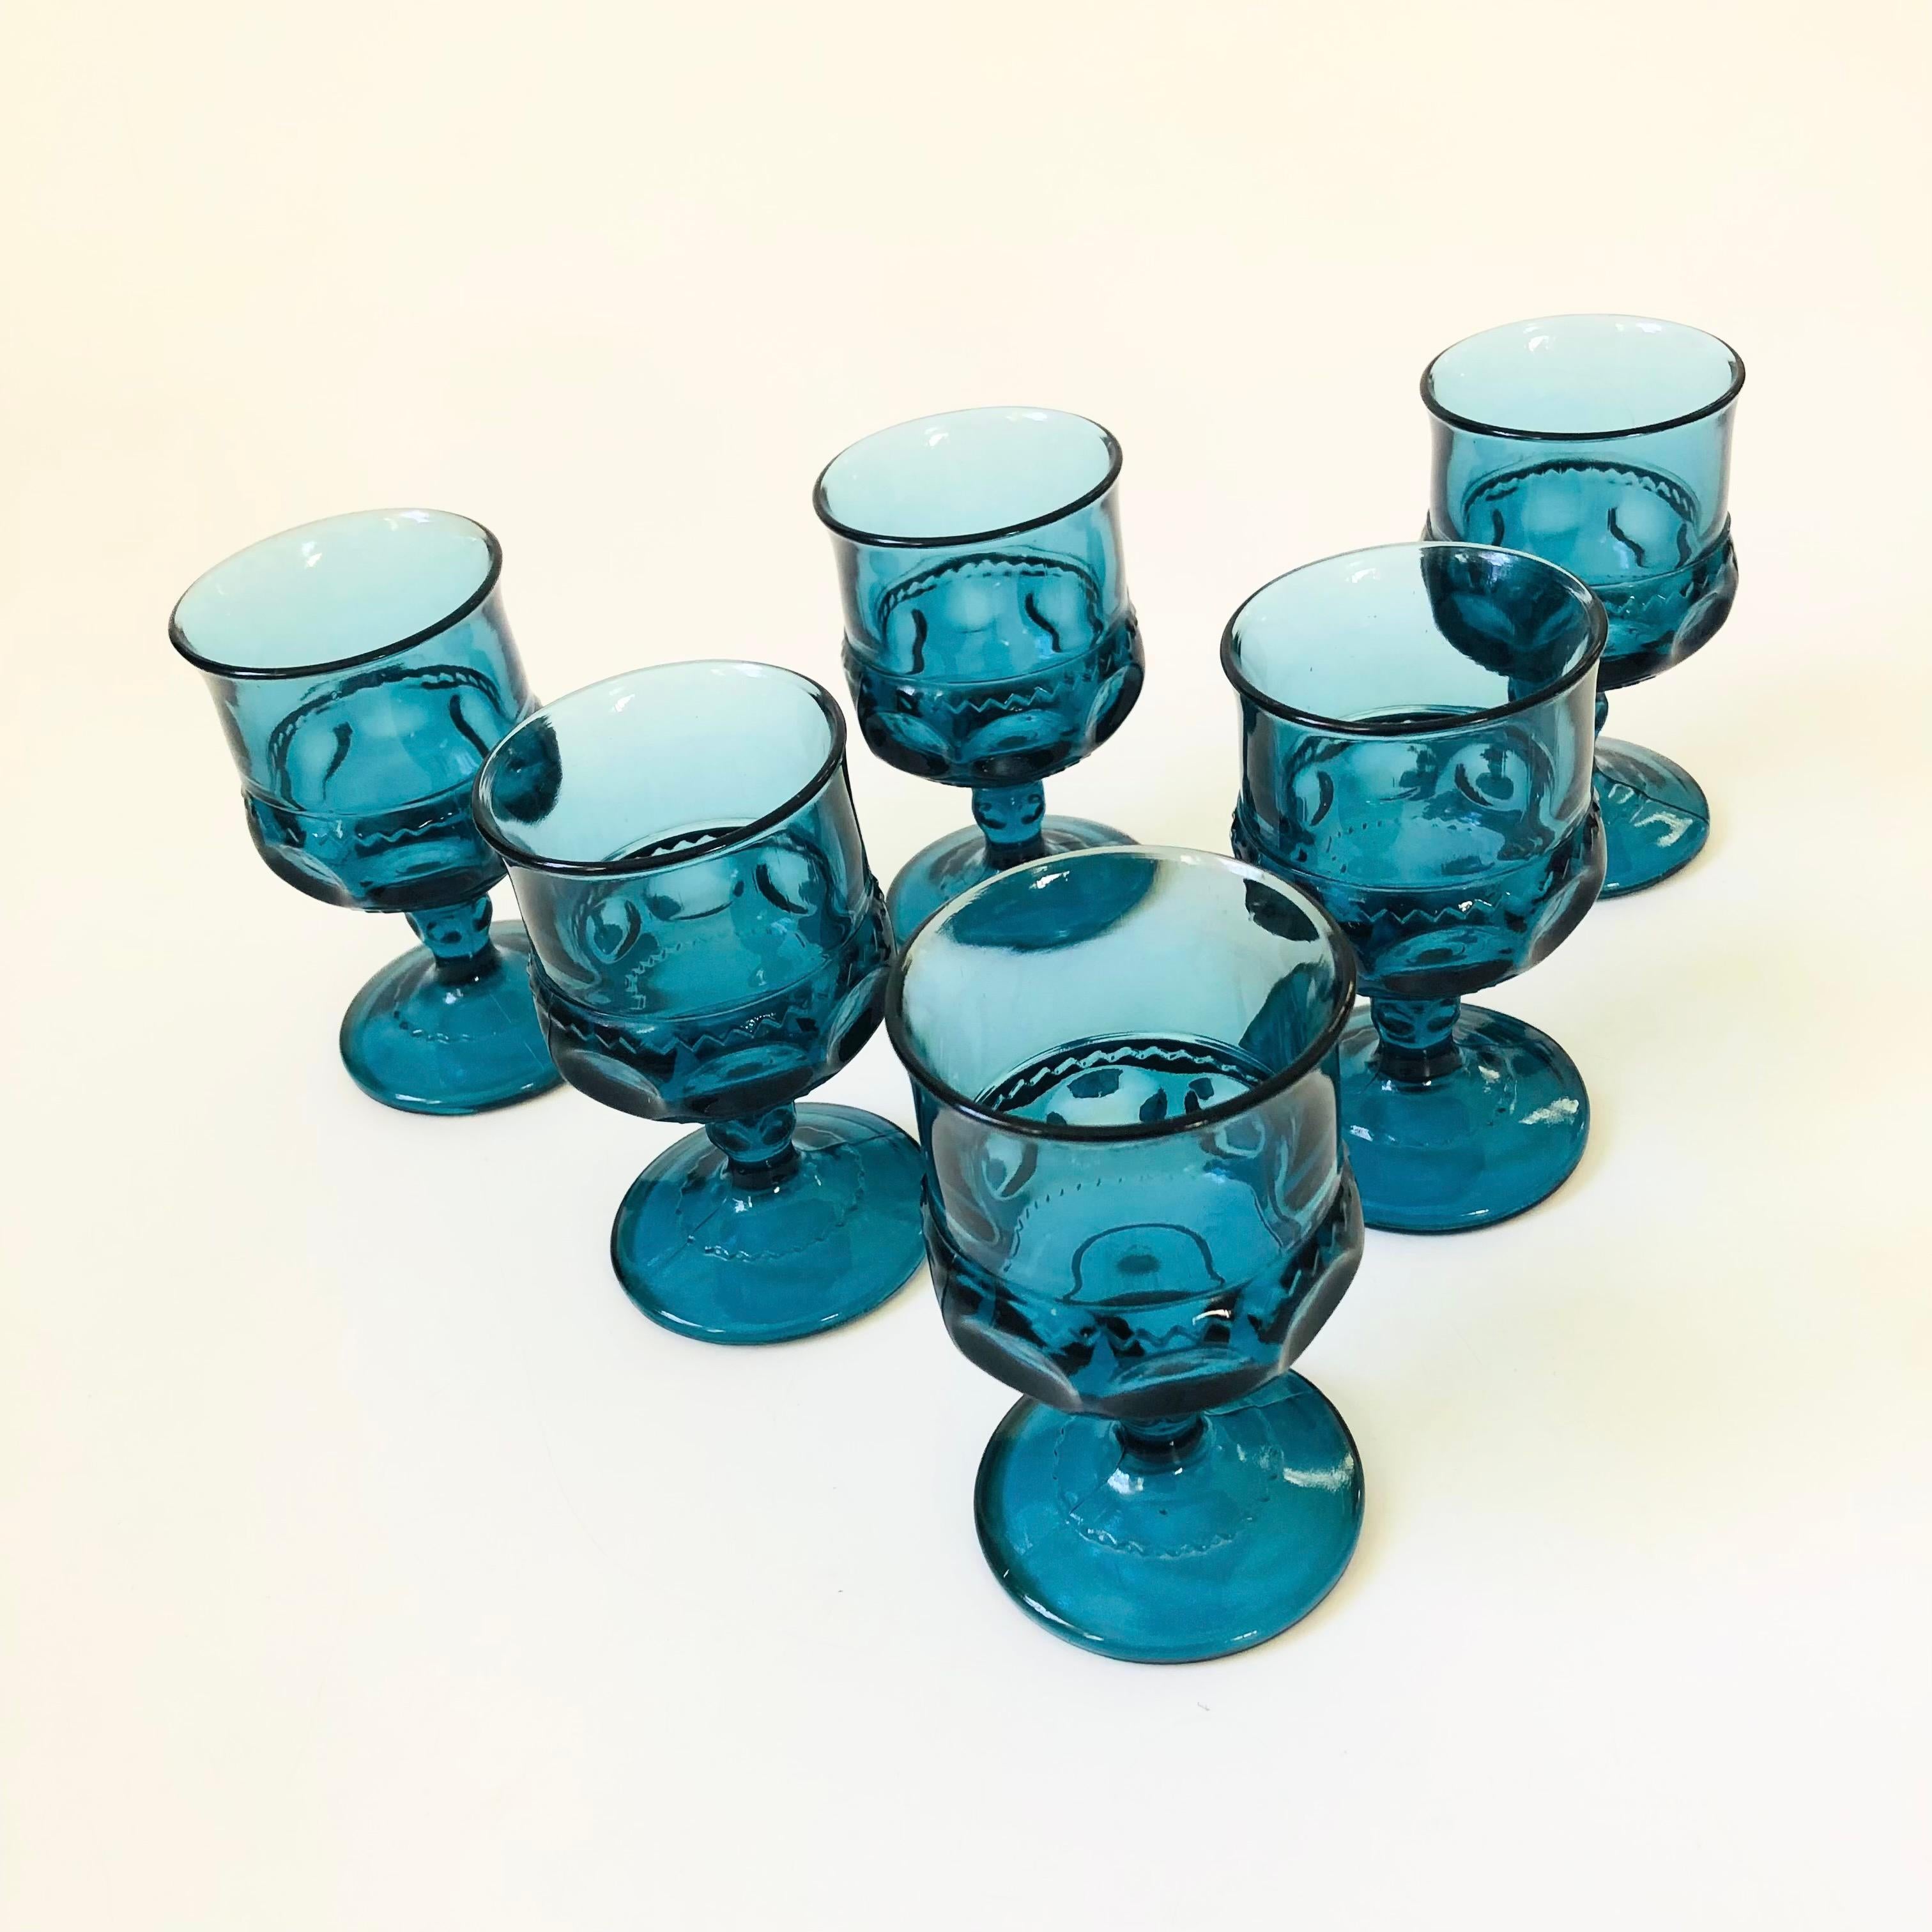 Ein Satz von 6 verschnörkelten Vintage-Pokalen aus blauem Glas. Hergestellt nach dem Muster King's Crown von Indiana Glass. Perfekt für ein kleines Glas Wein oder Champagner.

